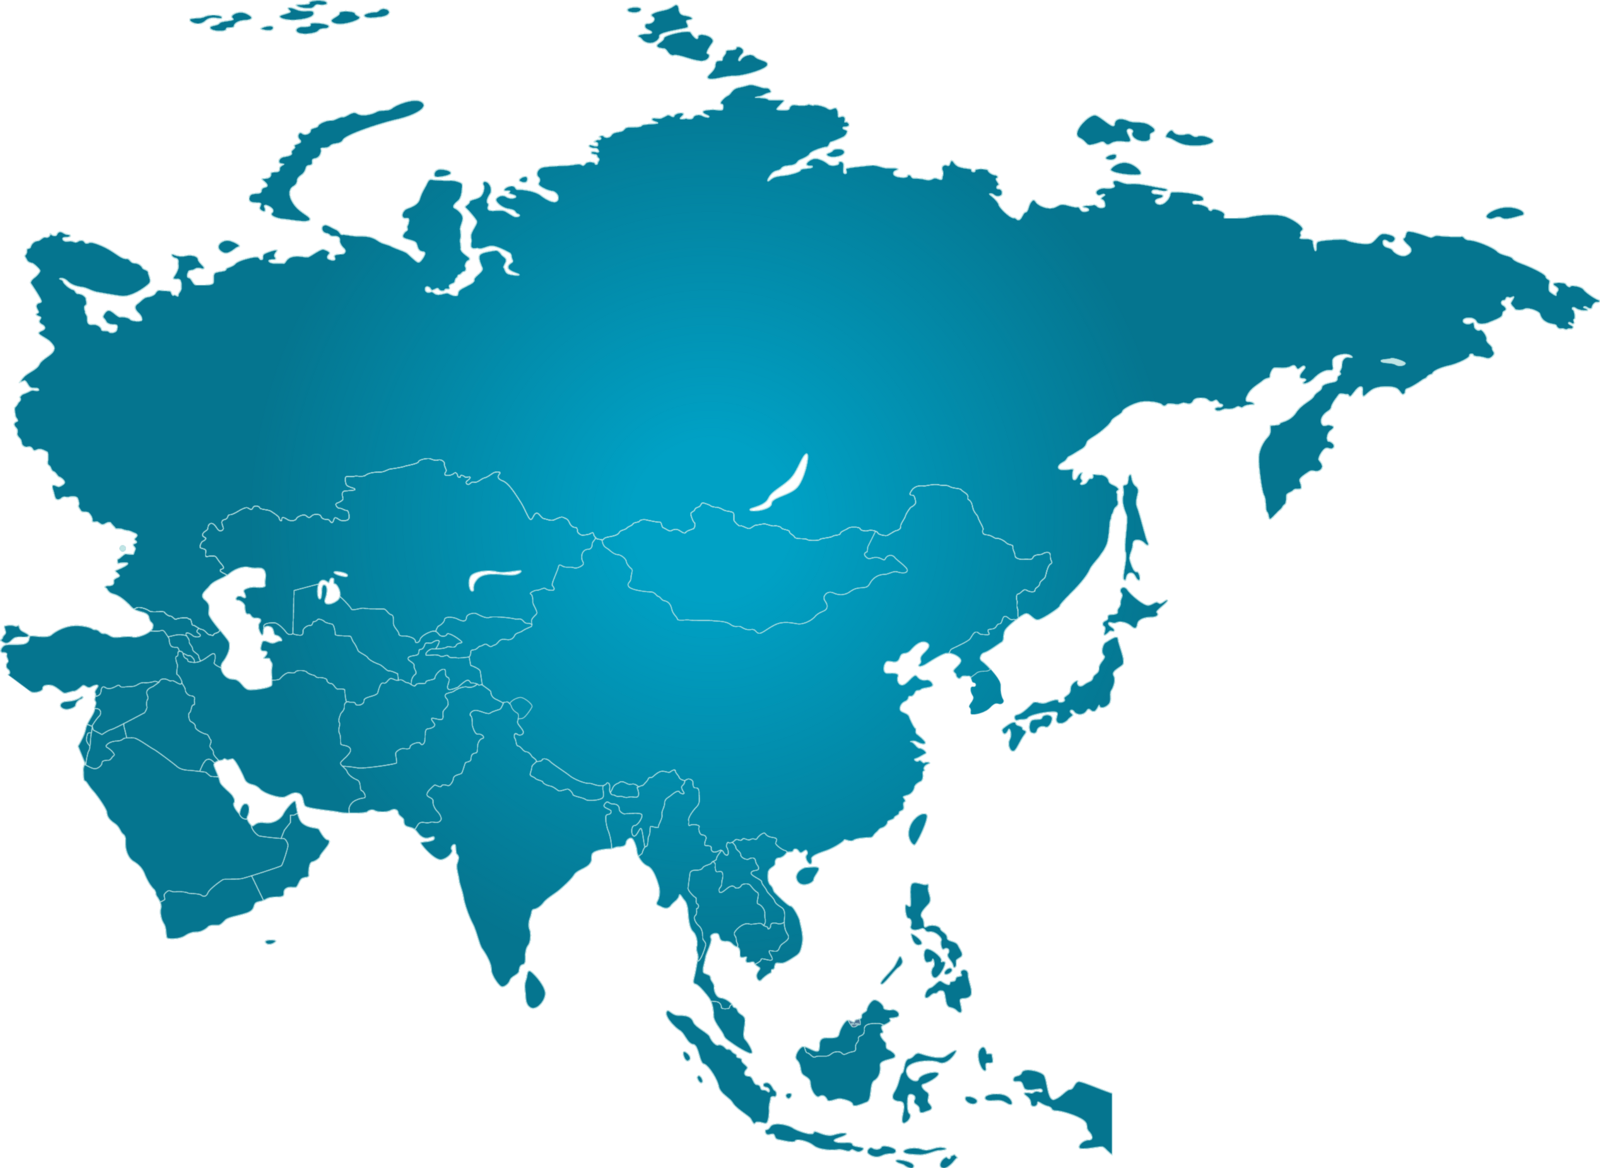 Asia how. Векторная карта Азии. Континент Евразия. Евразия вектор. Материк Китай и Россия вектор.